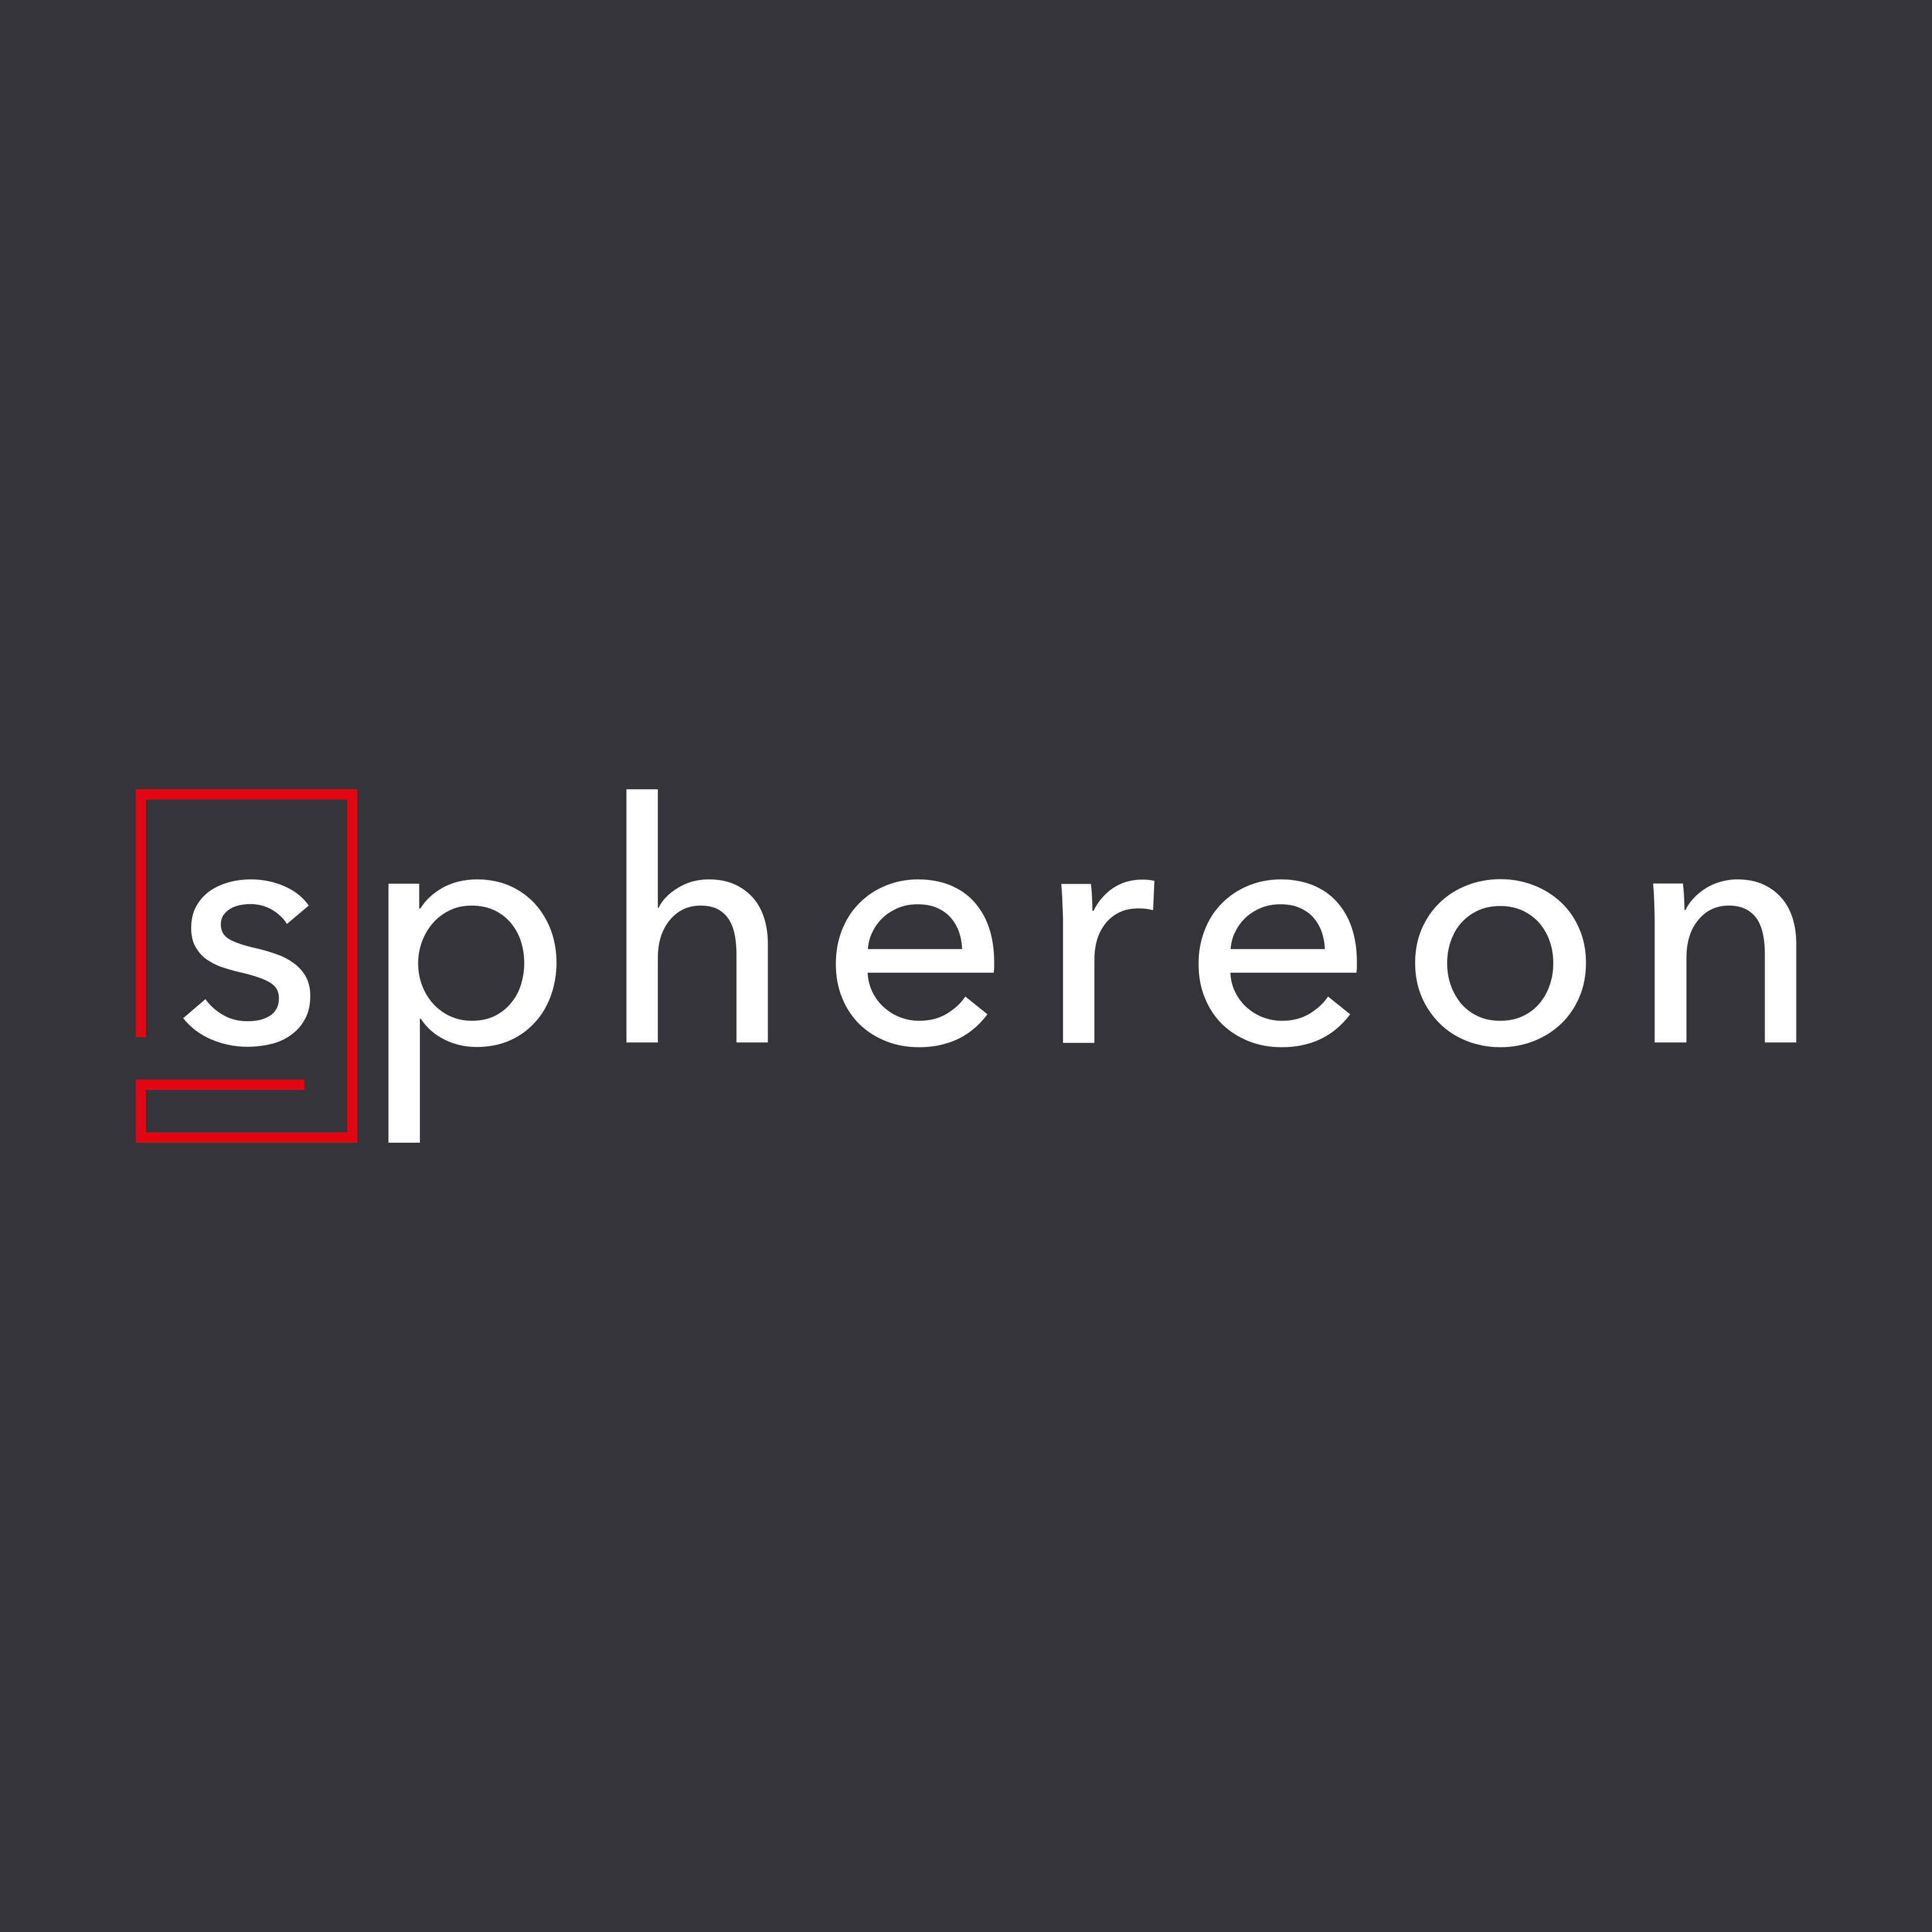 (c) Sphereon.com